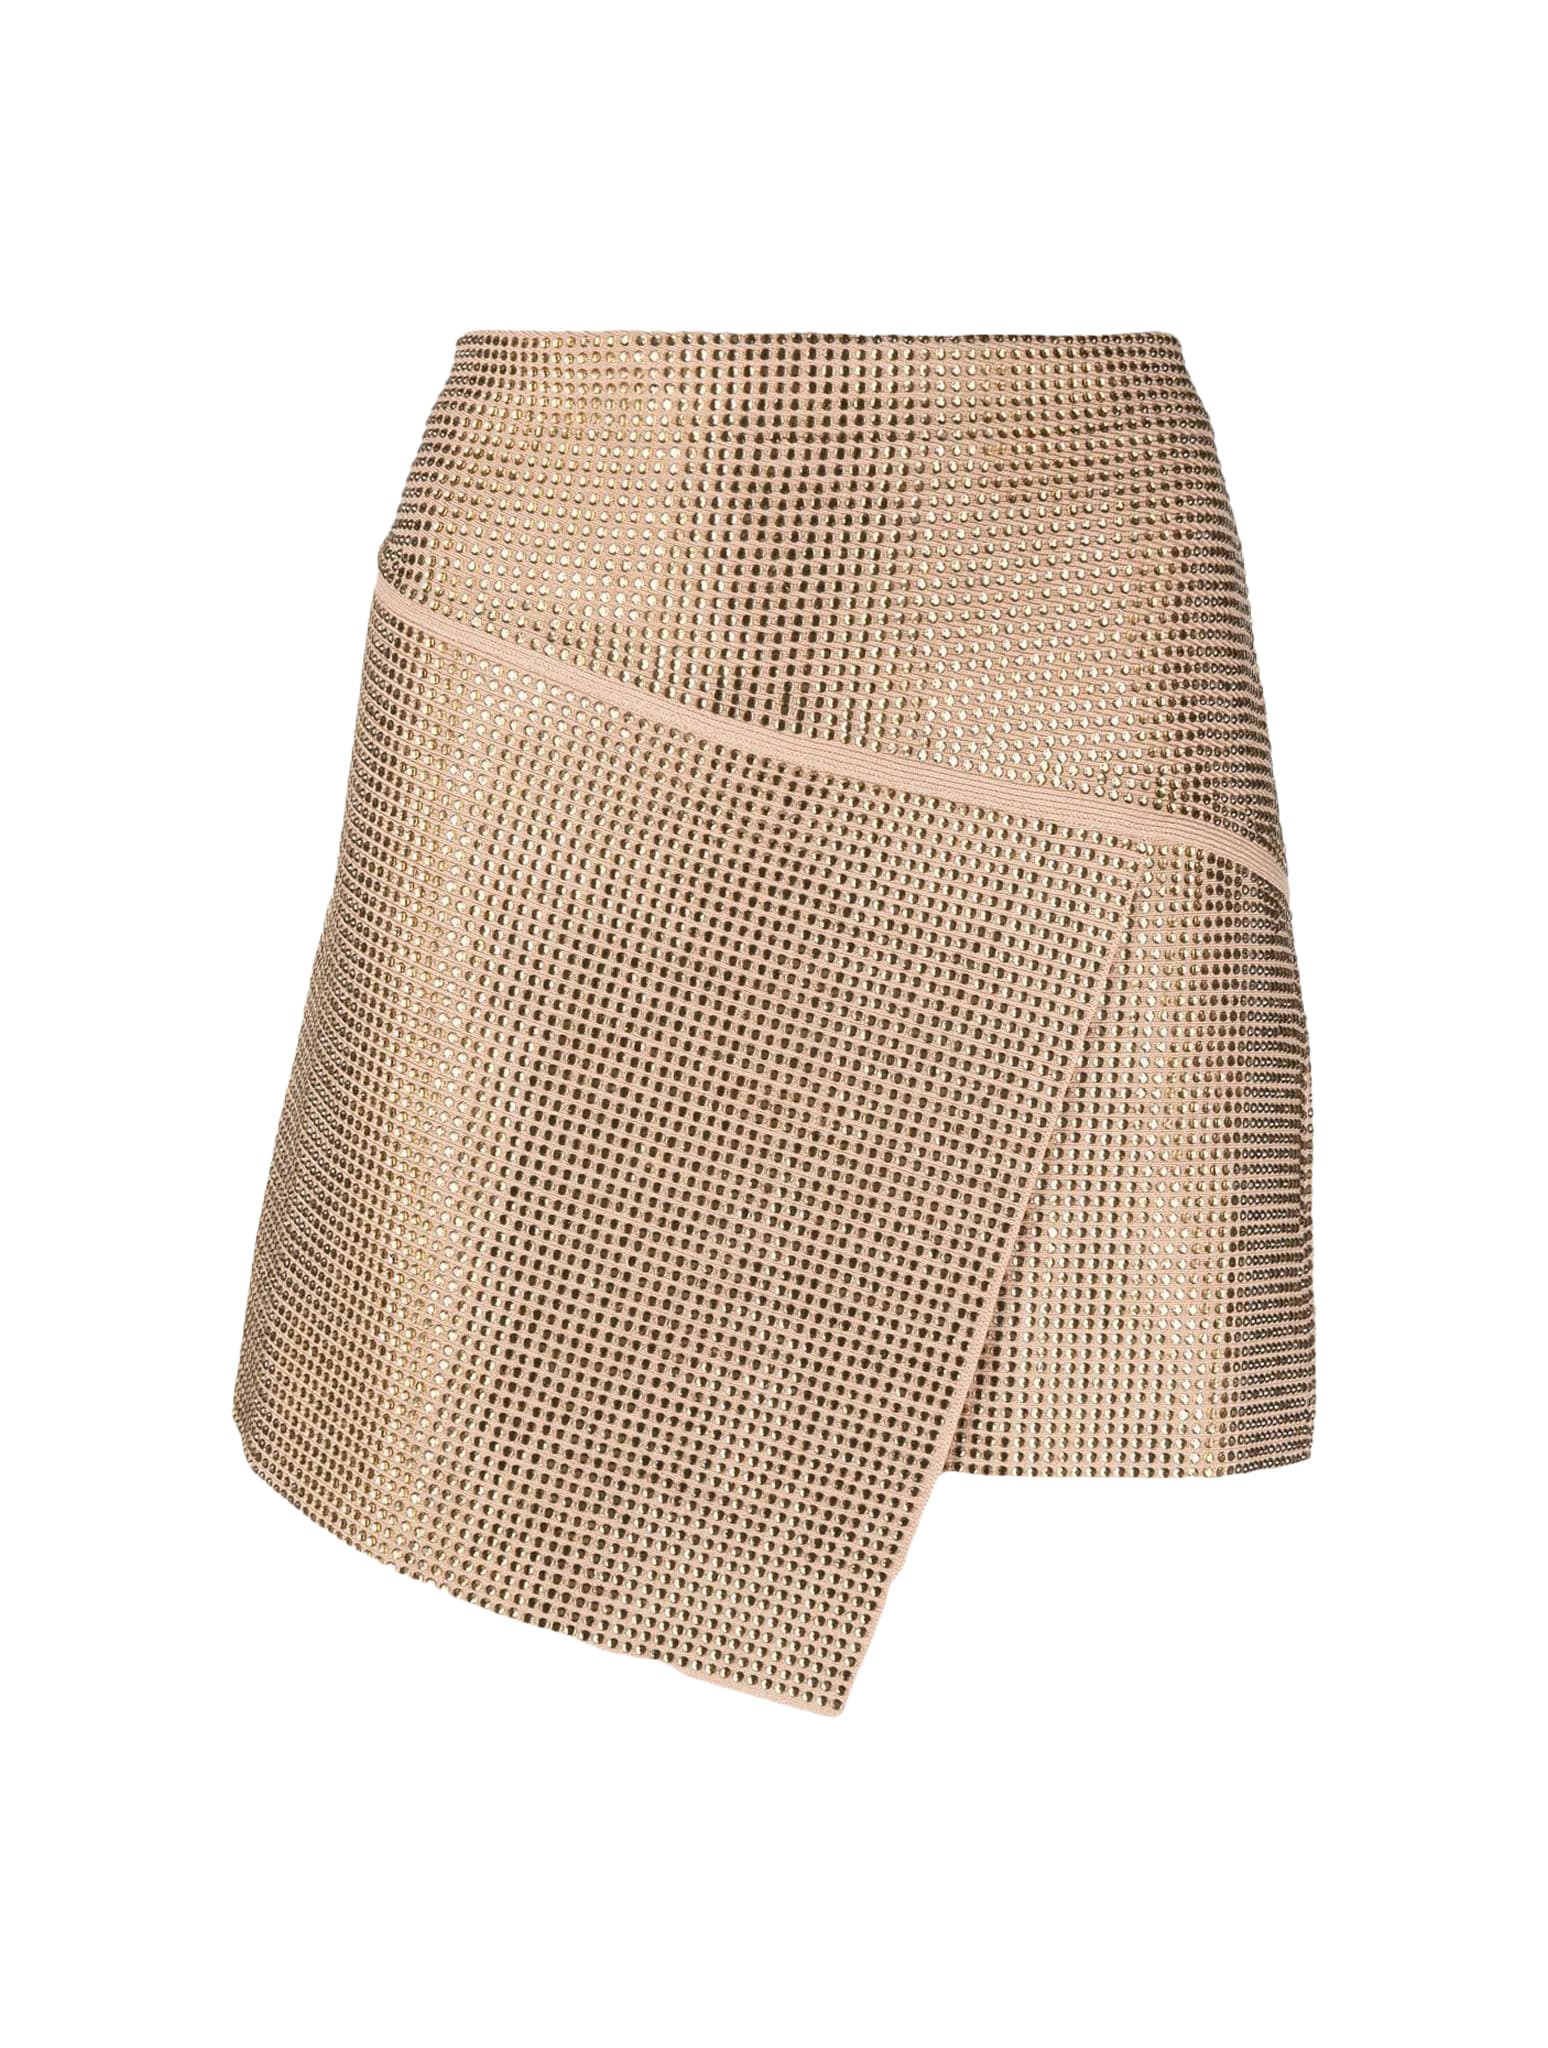 ANDREADAMO Full Strass A-line Panels Mini Skirt